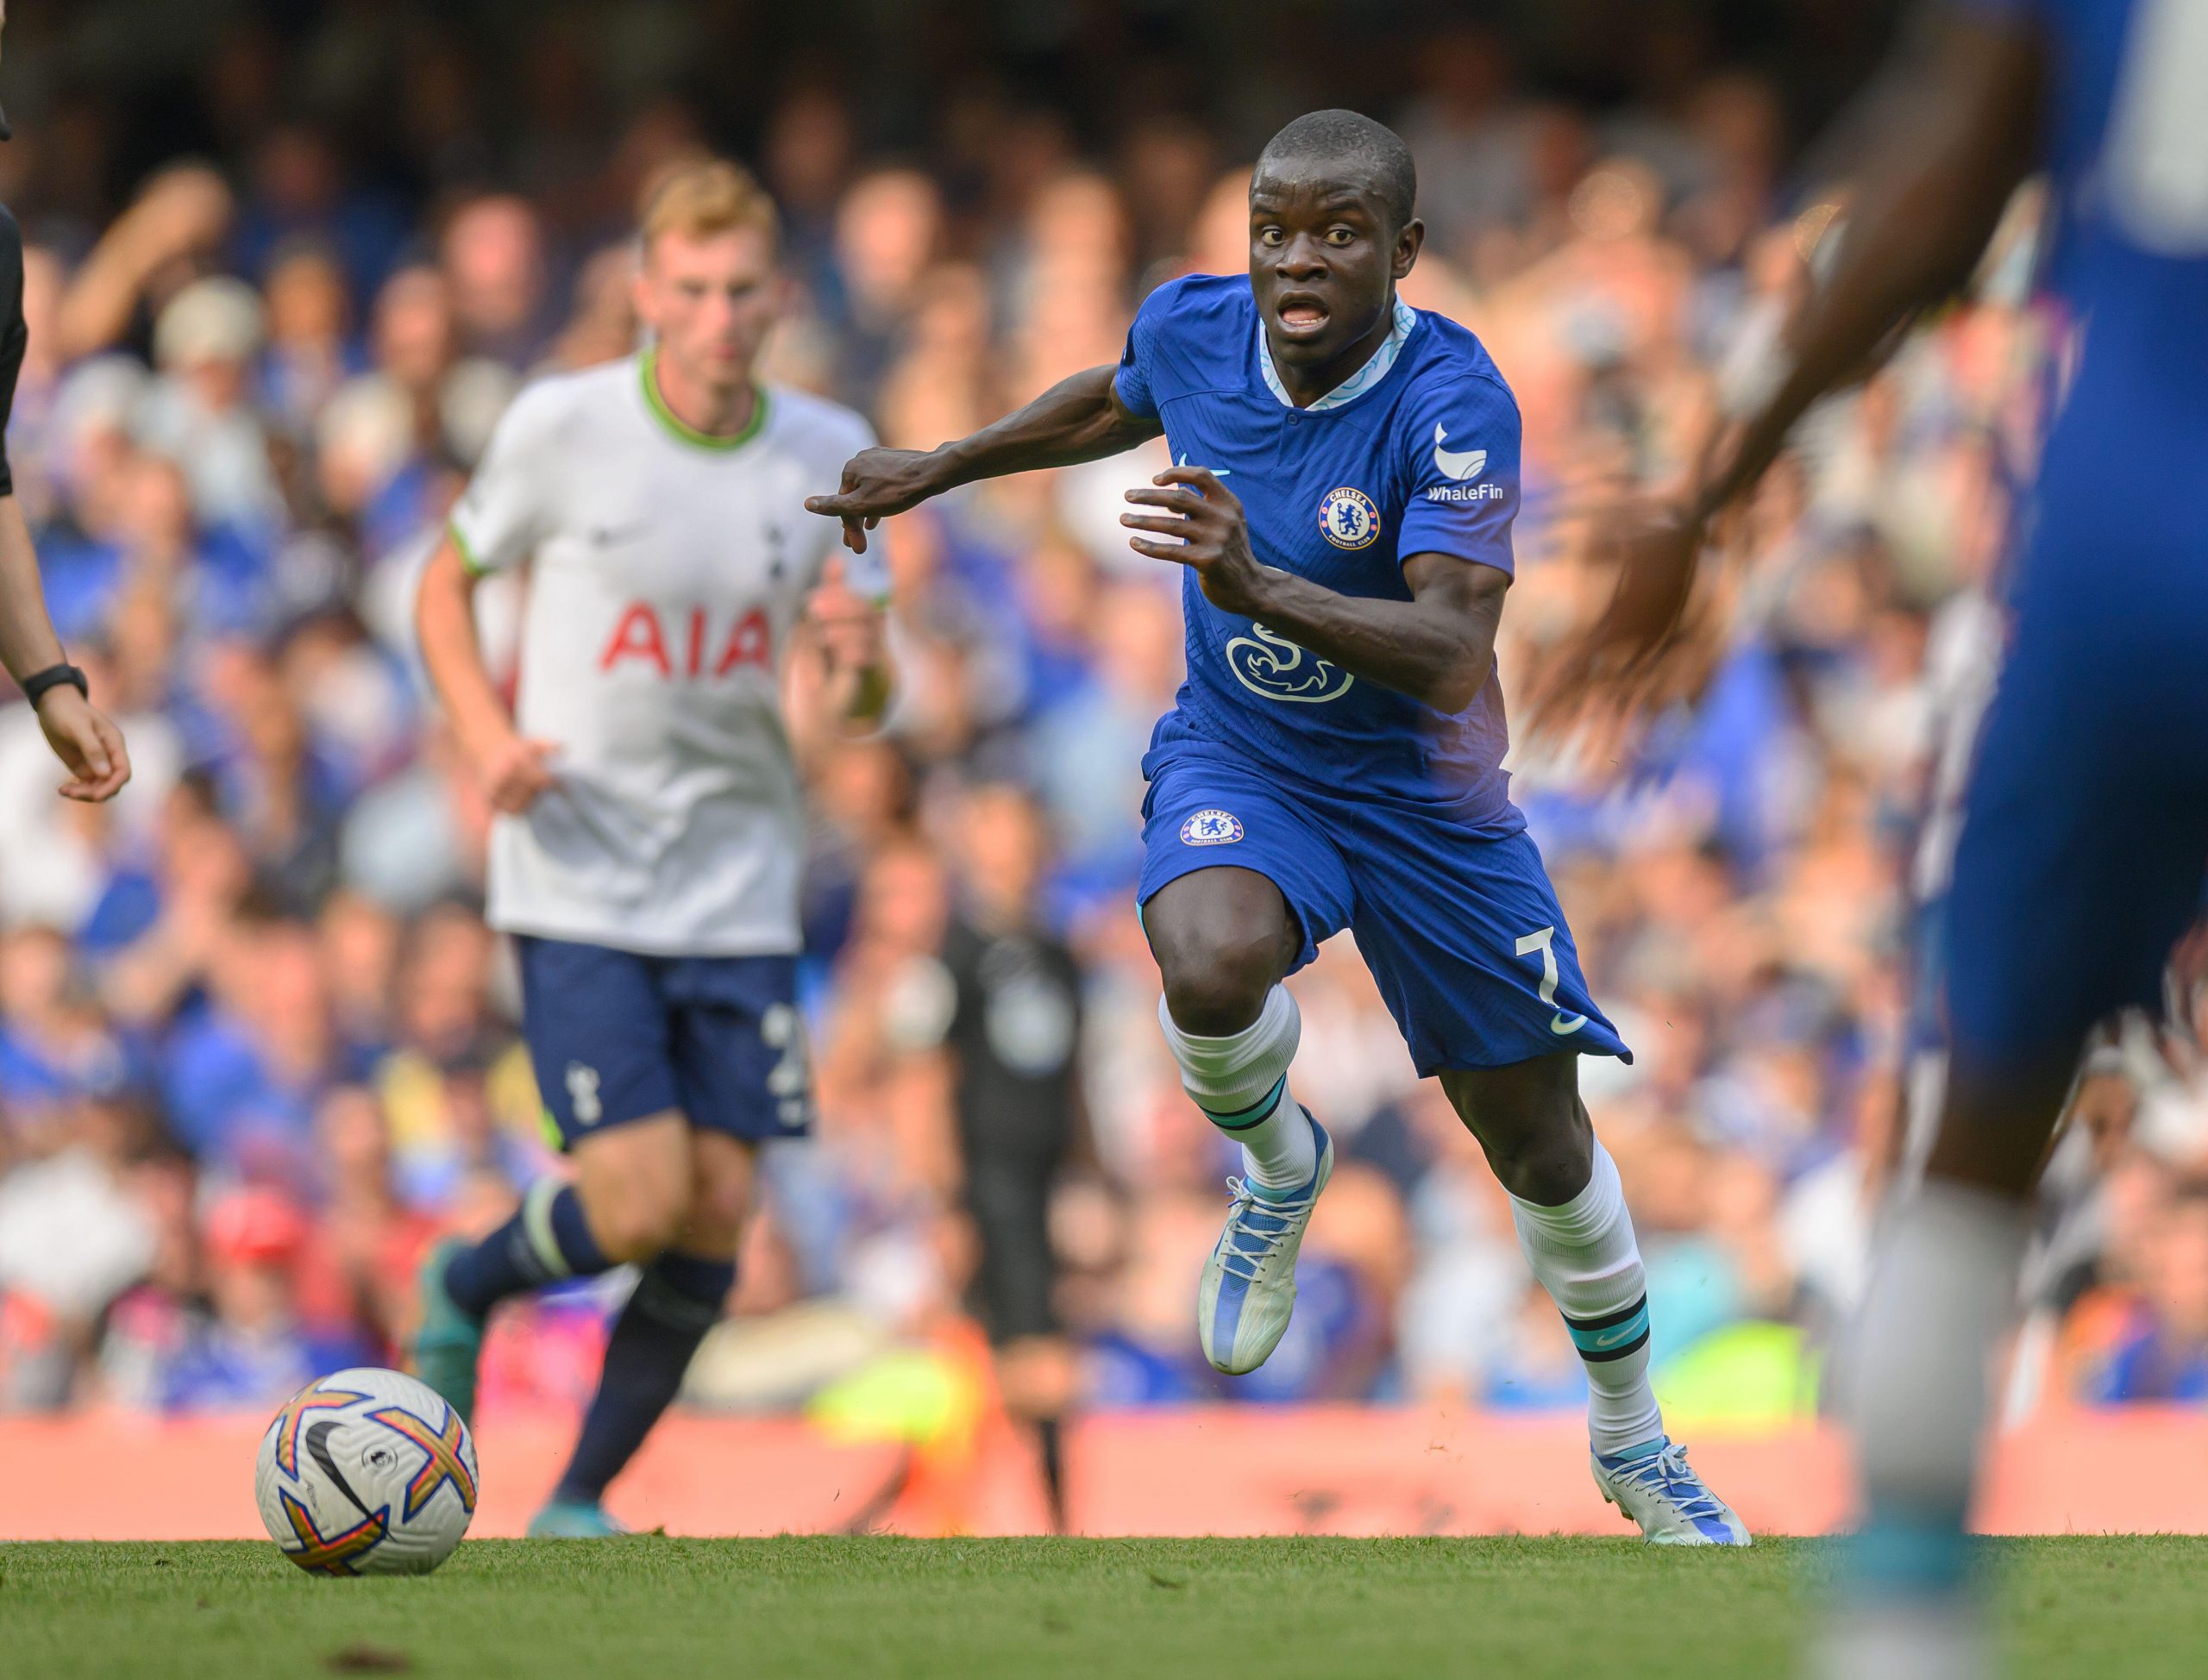 Chelsea midfielder N'Golo Kanté